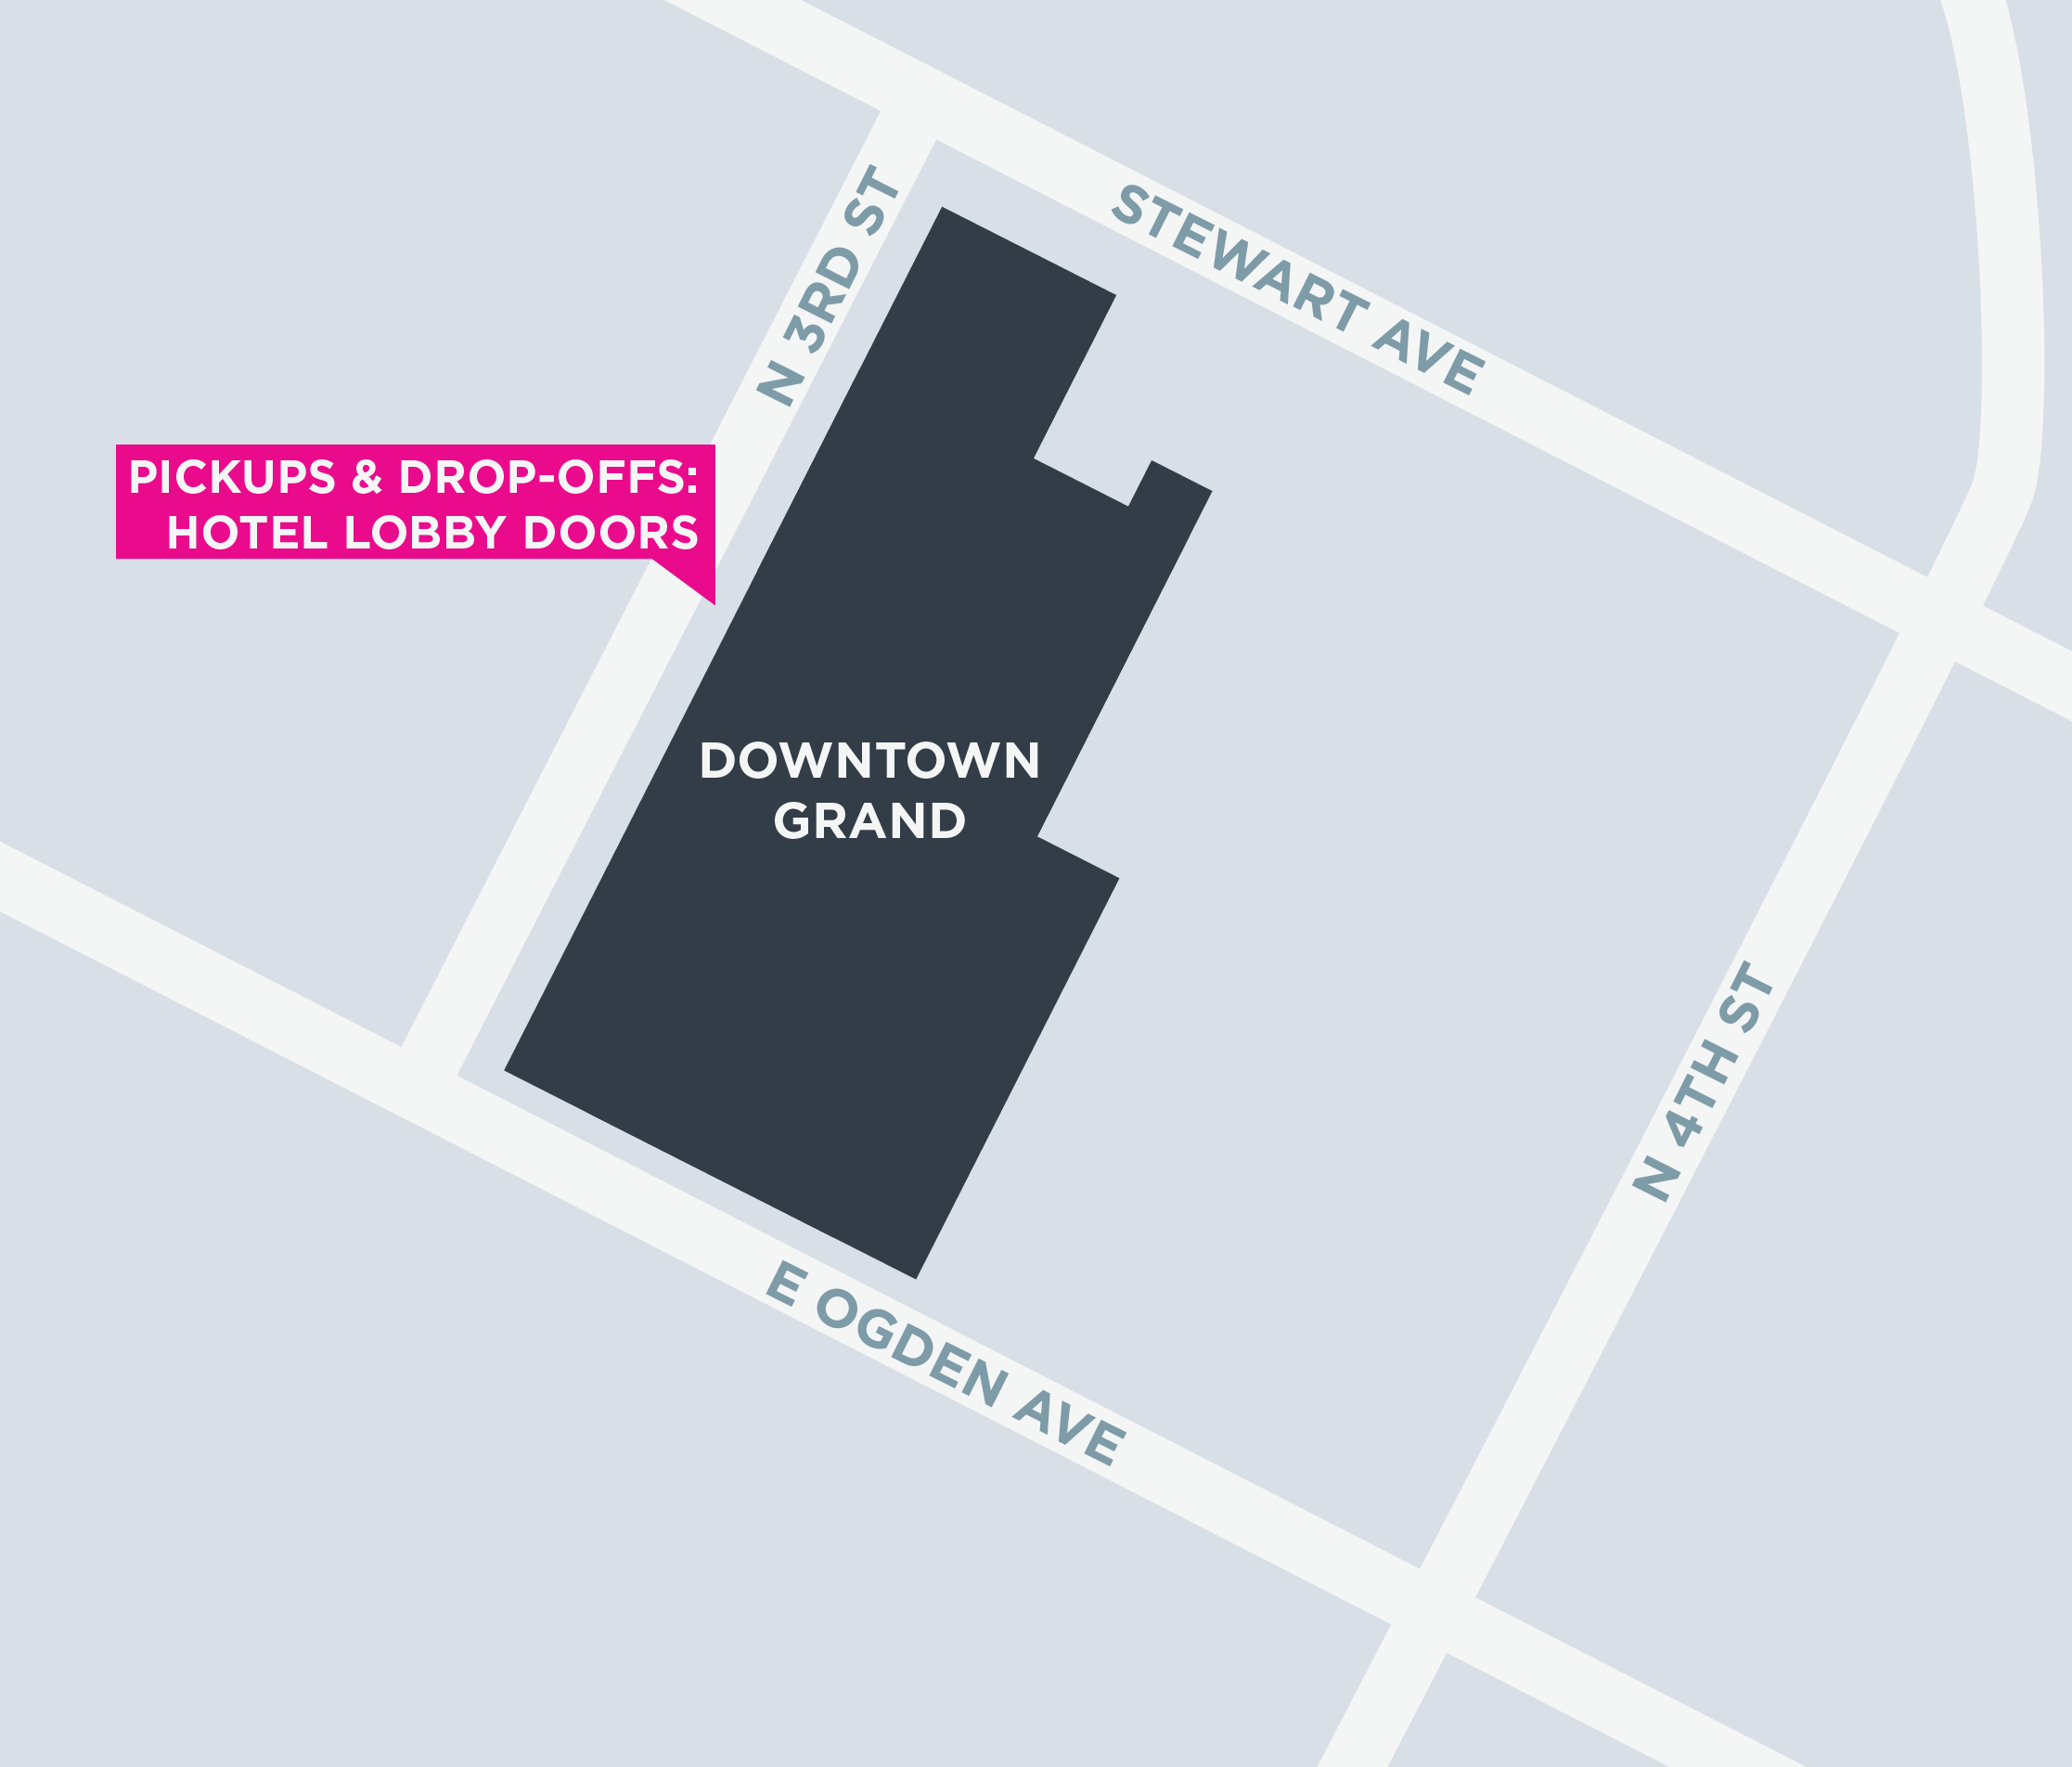 Esta imagem mostra um mapa do Downtown Grand, incluindo pontos de encontro e áreas de desembarque.